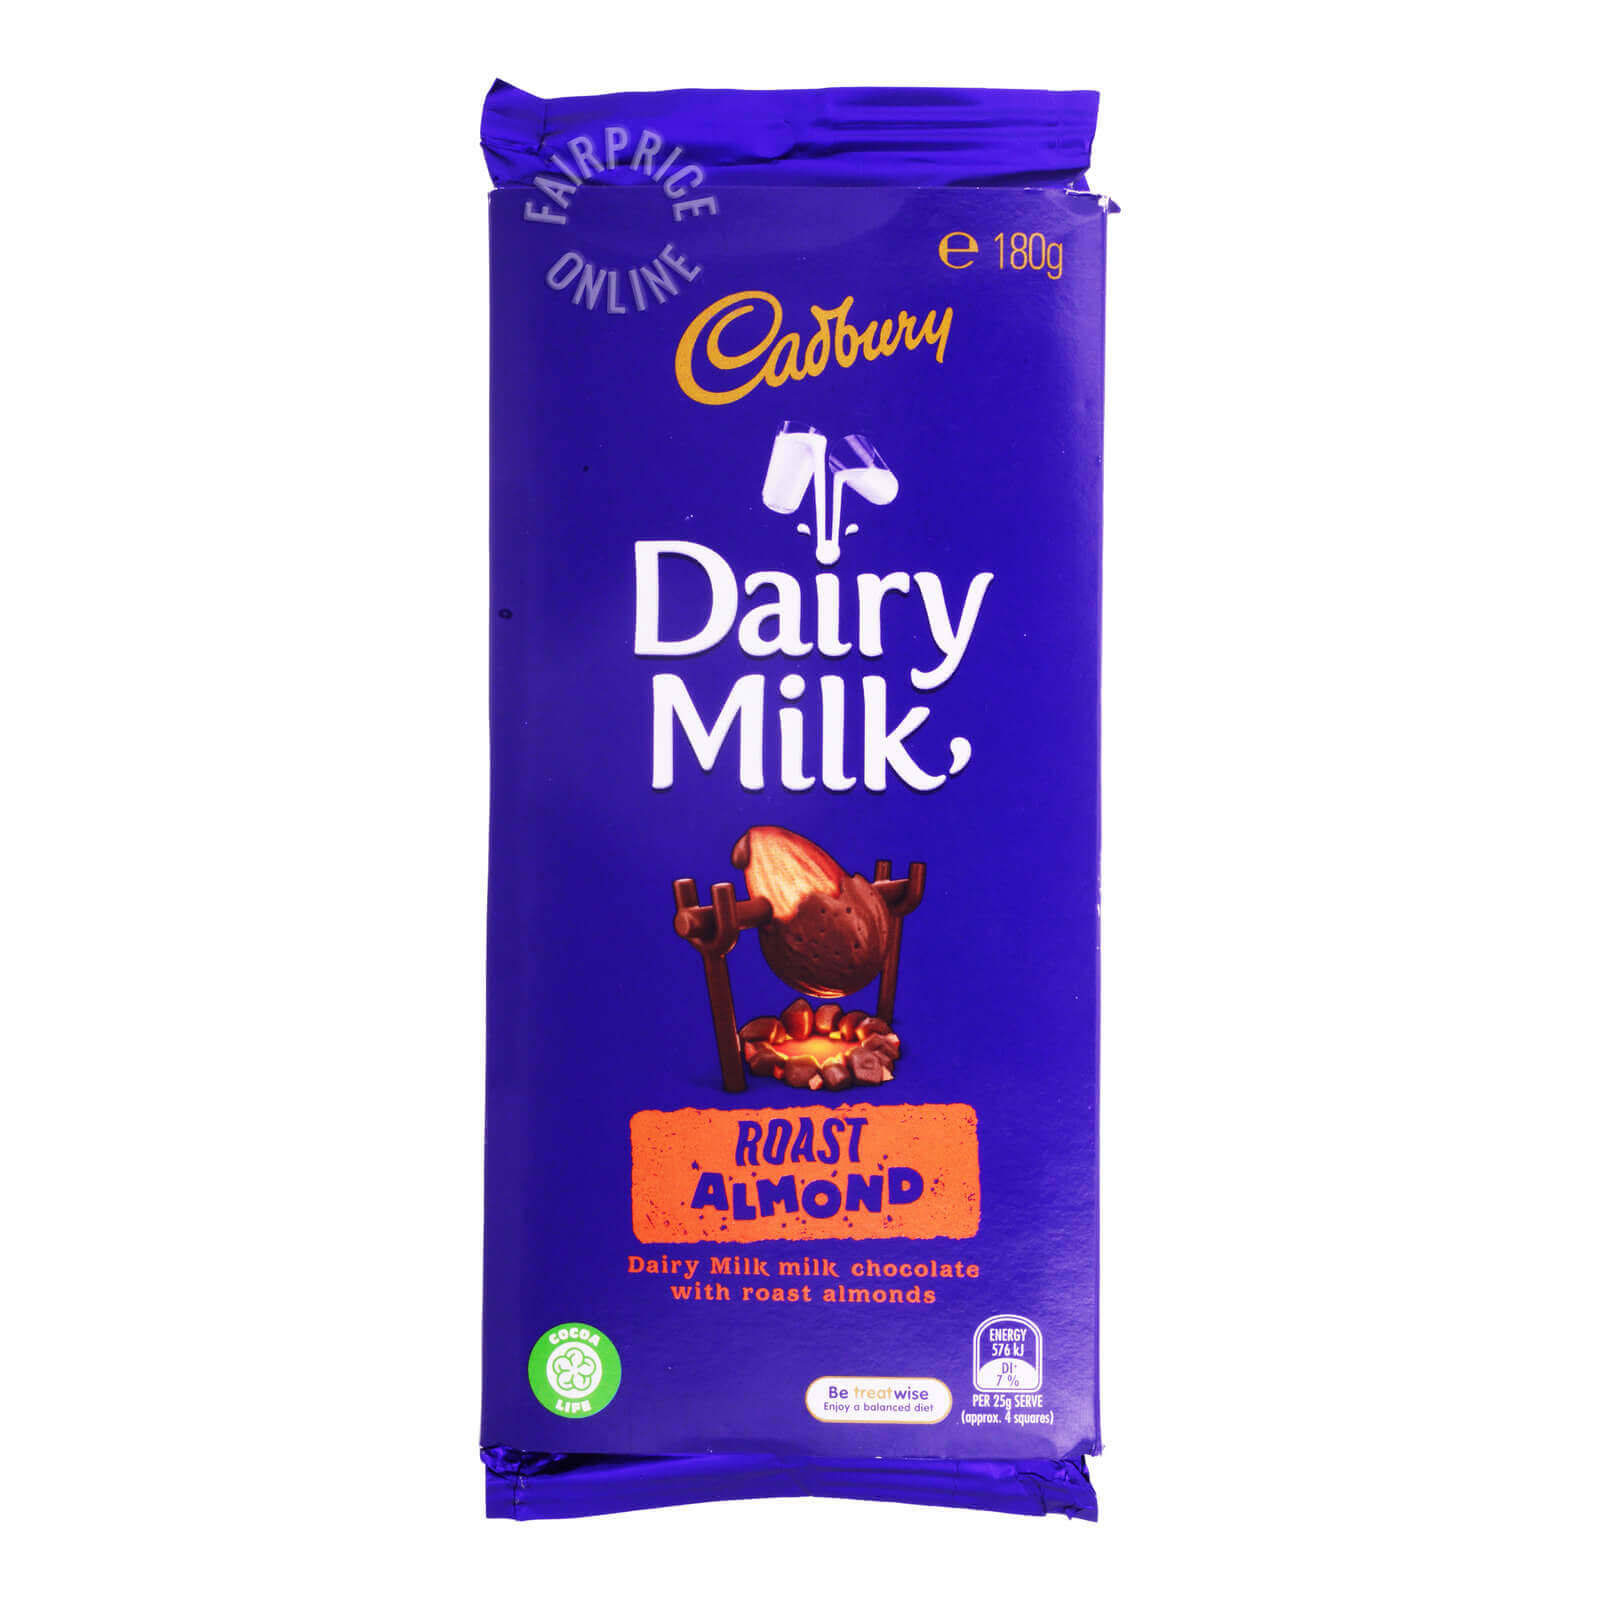 Cadbury Dairy Milk Roast almond (180g)